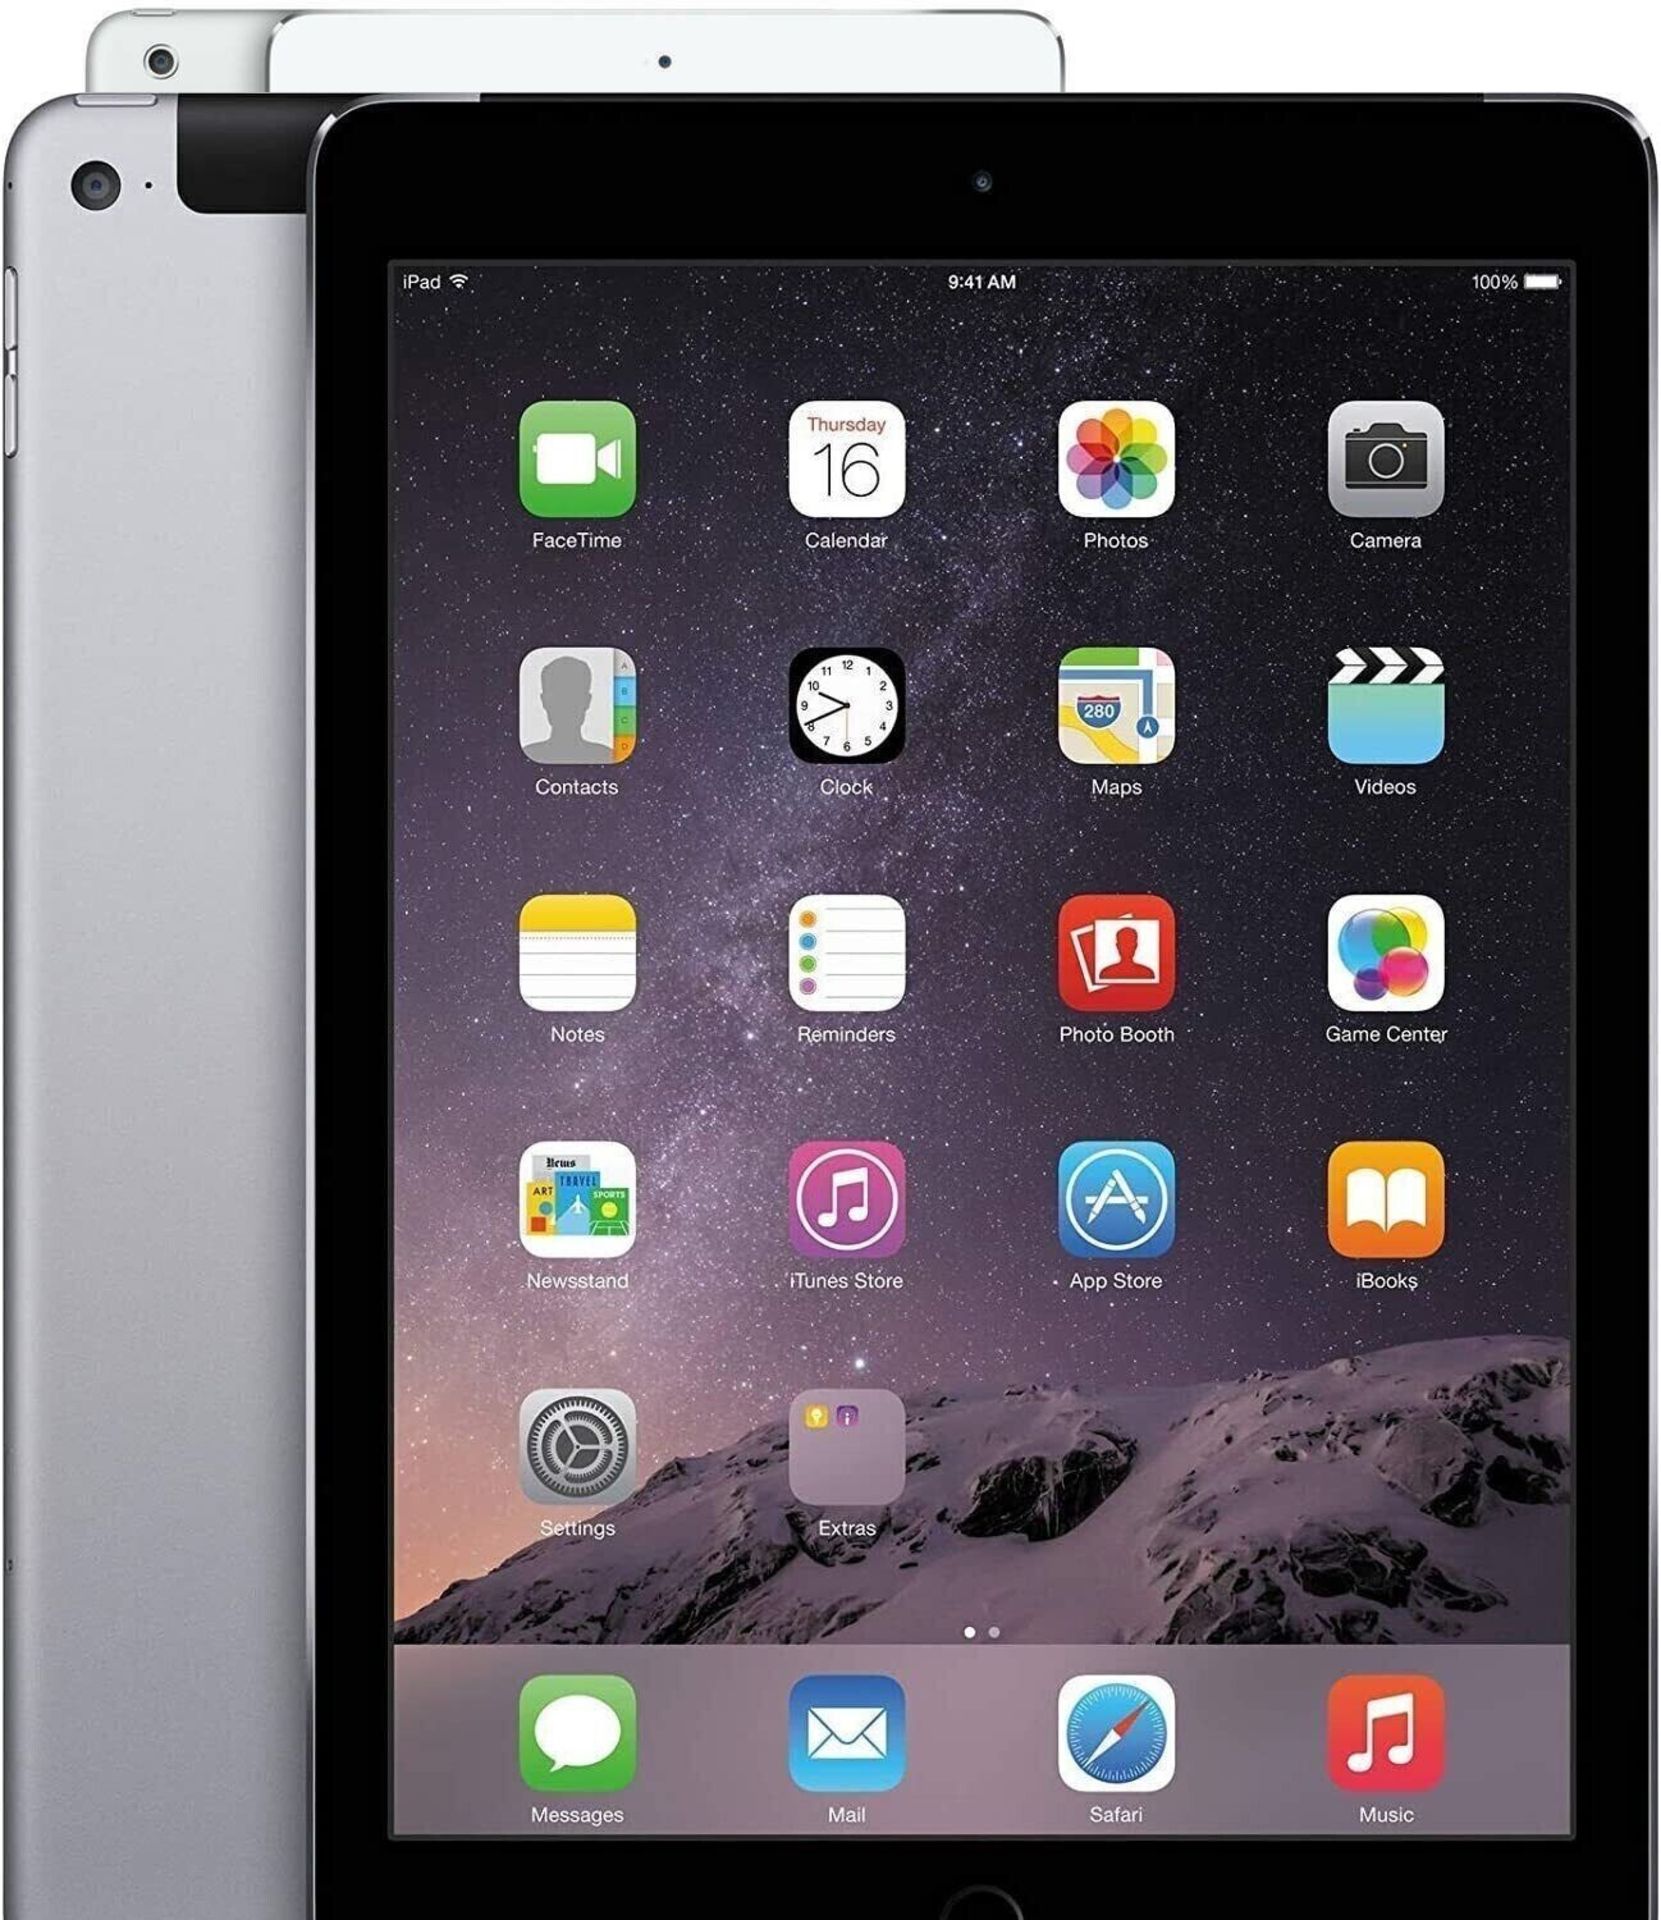 Ex Company Apple iPad Air 2 16gb Wifi Grade A. Colours may vary